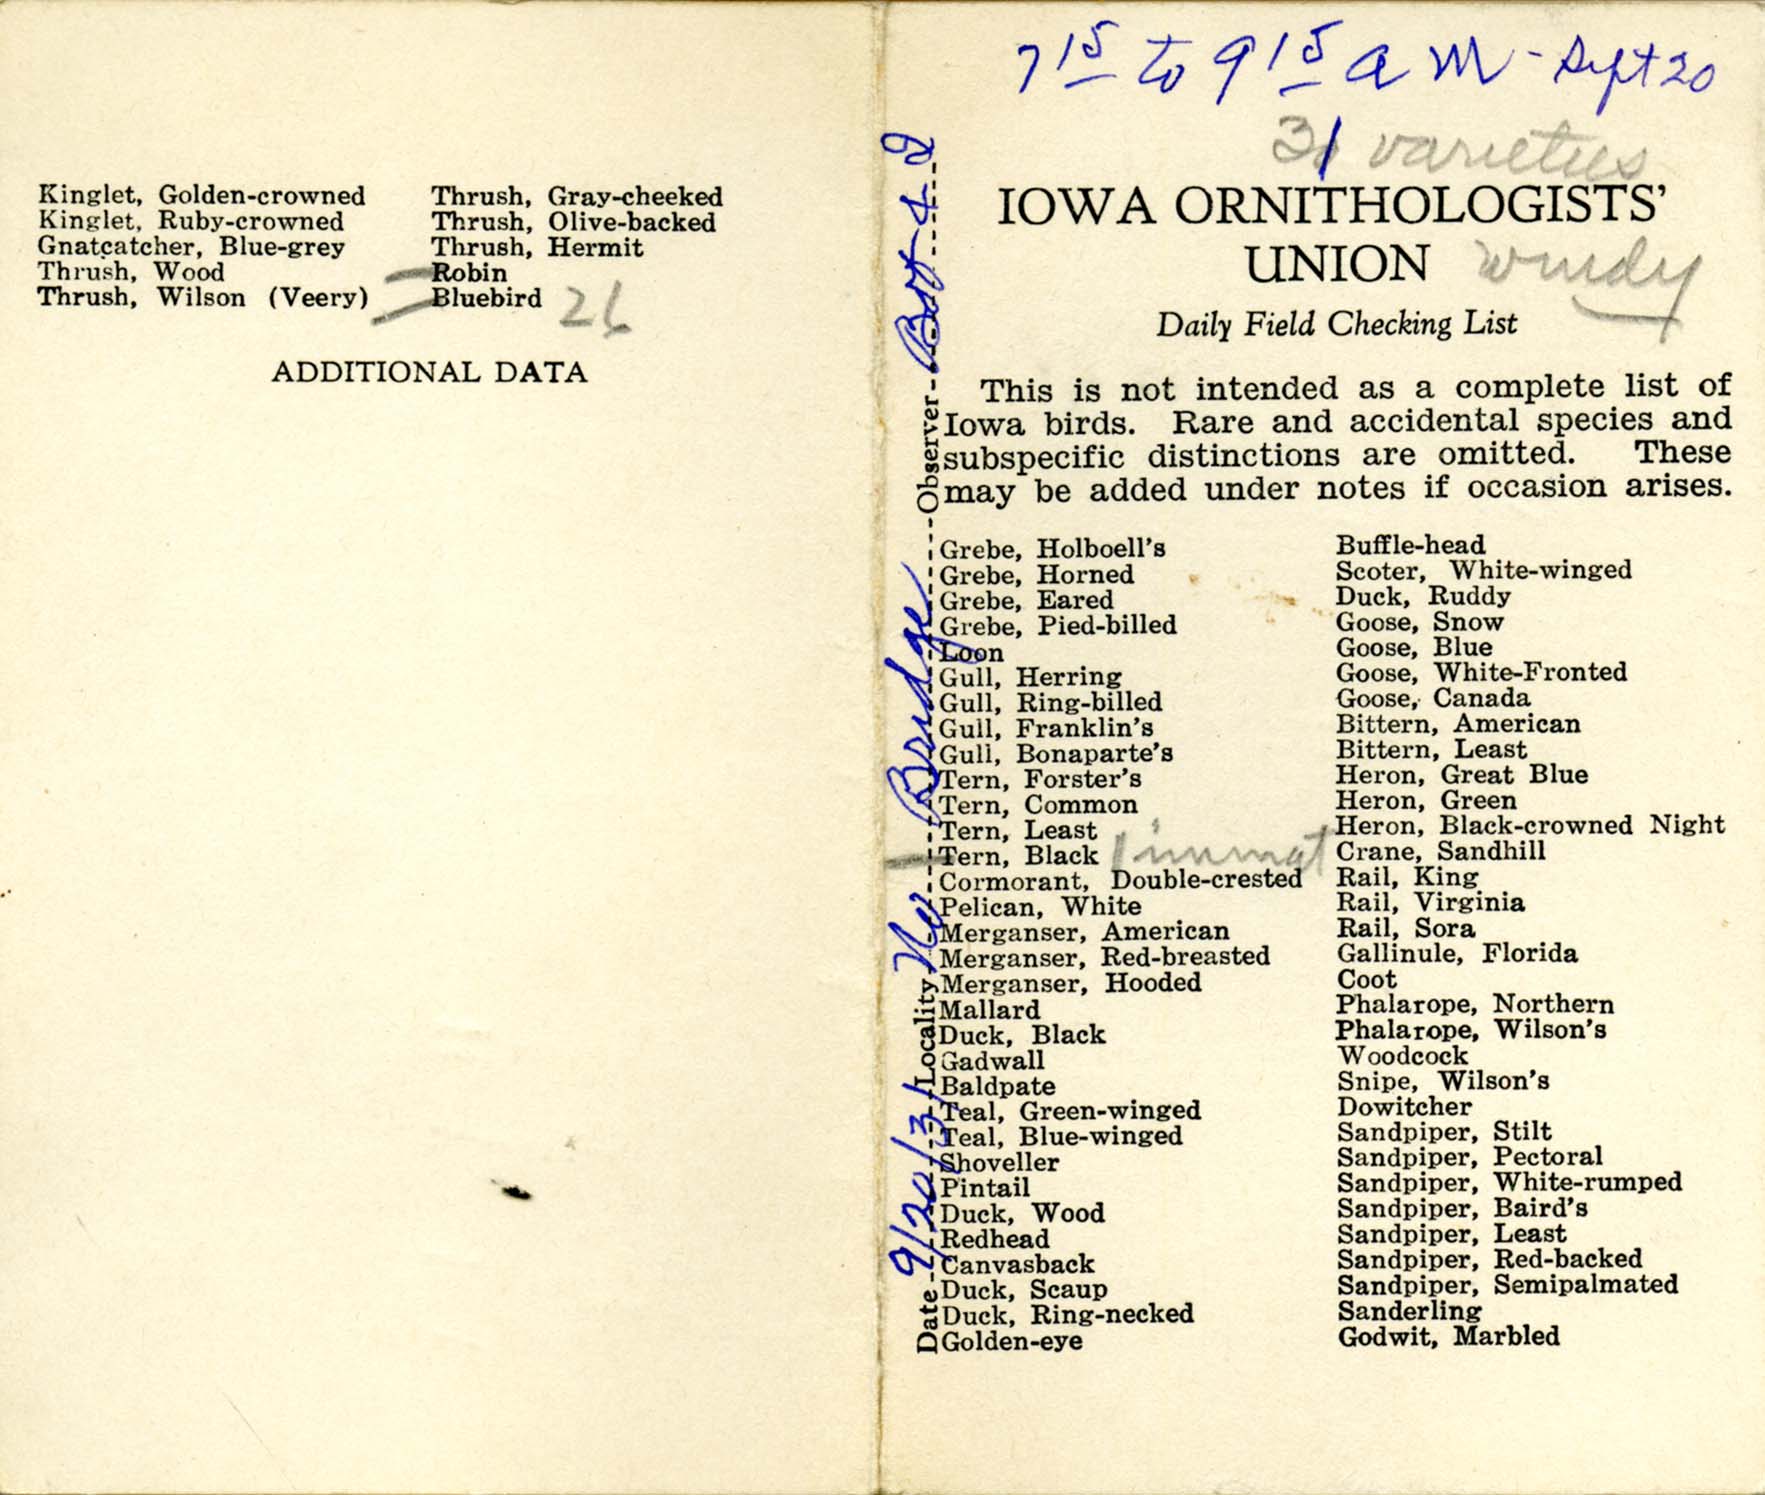 Daily field checking list, Walter Rosene, September 20, 1931